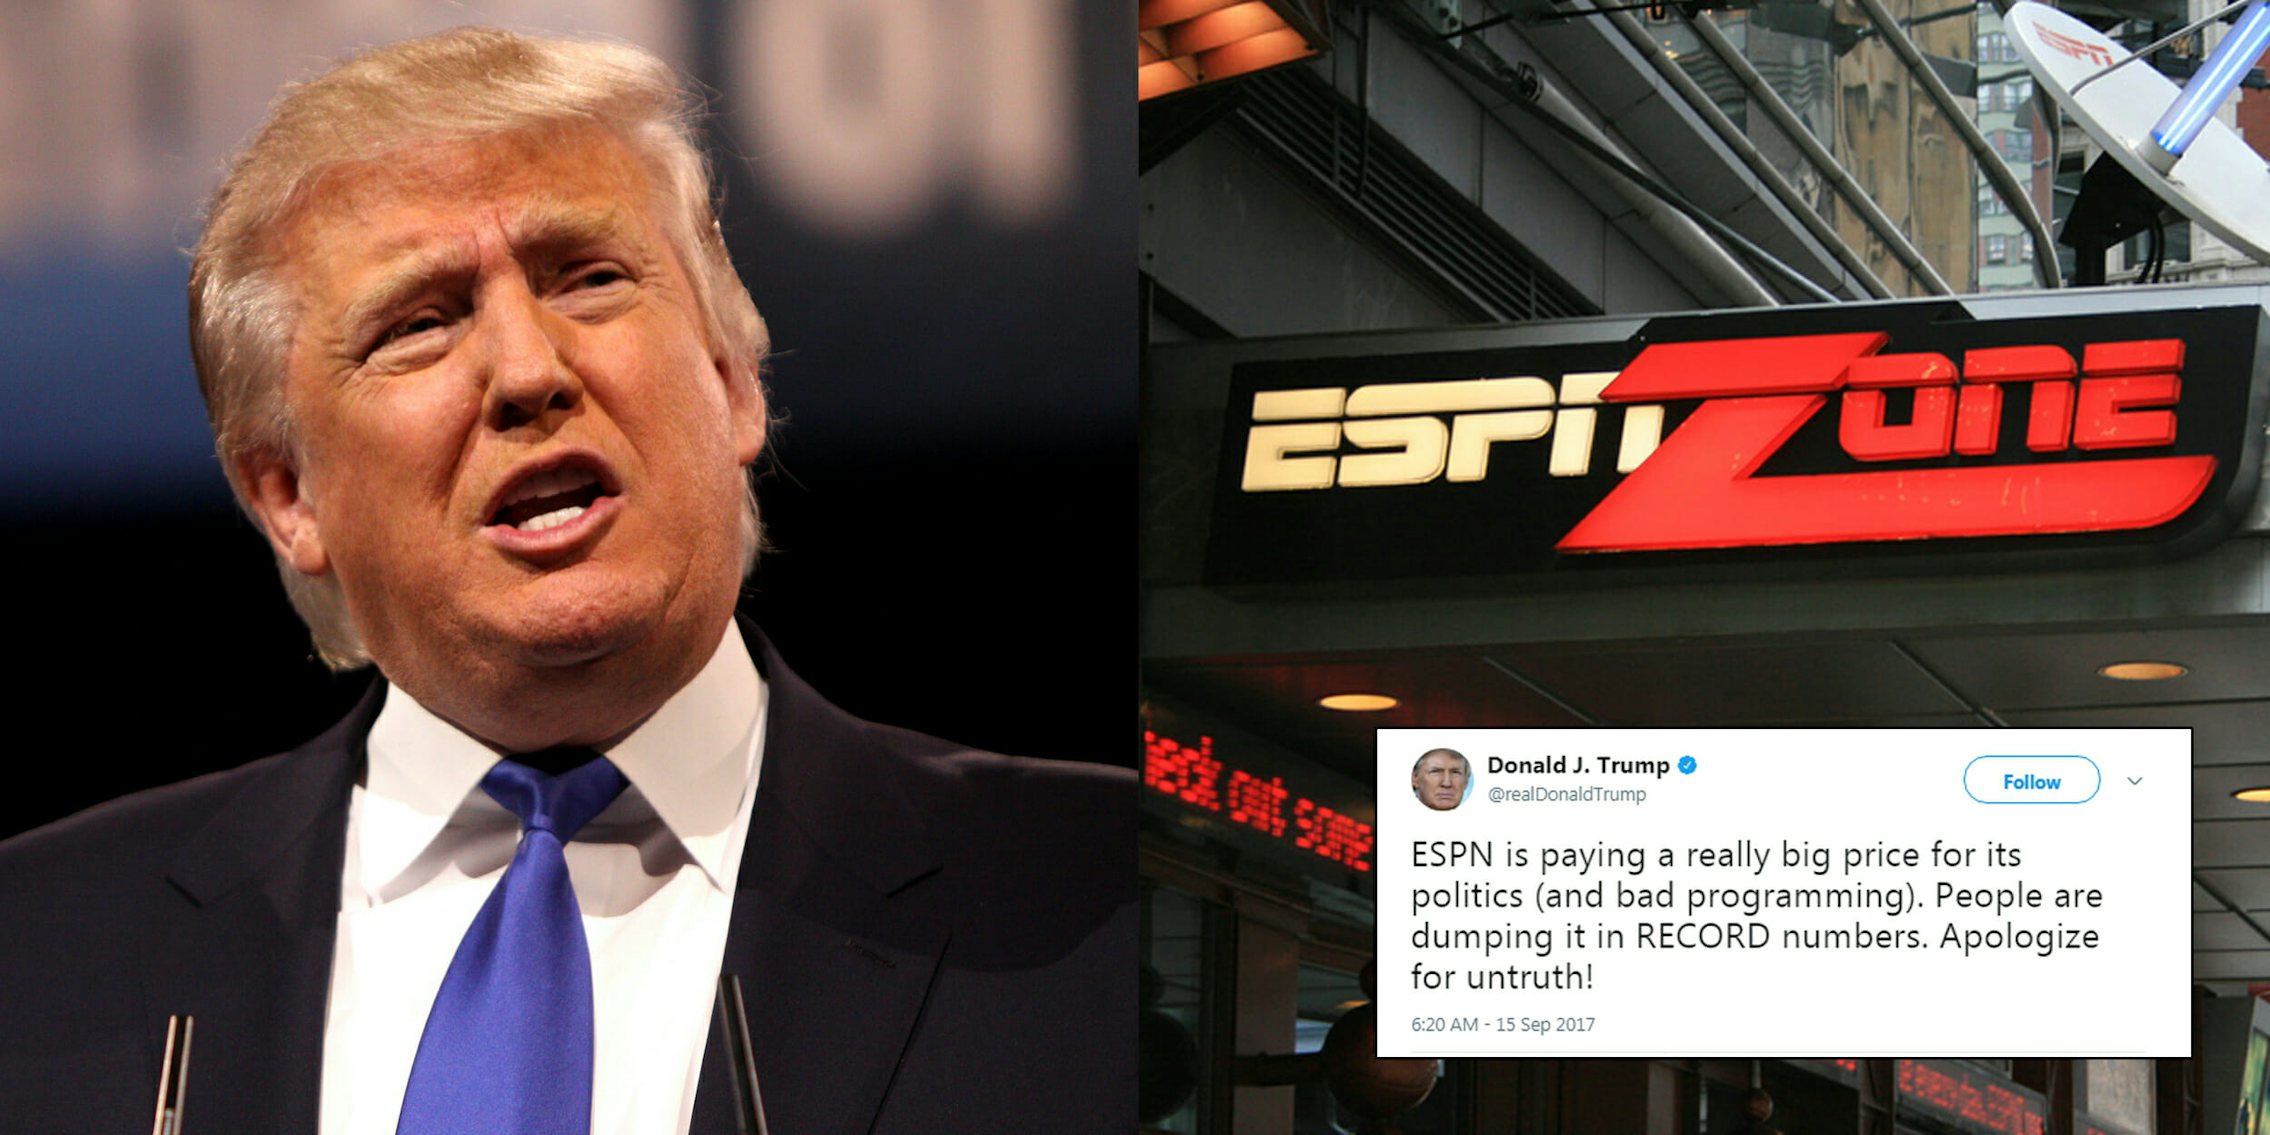 Donald Trump slammed ESPN in a Friday morning tweet.